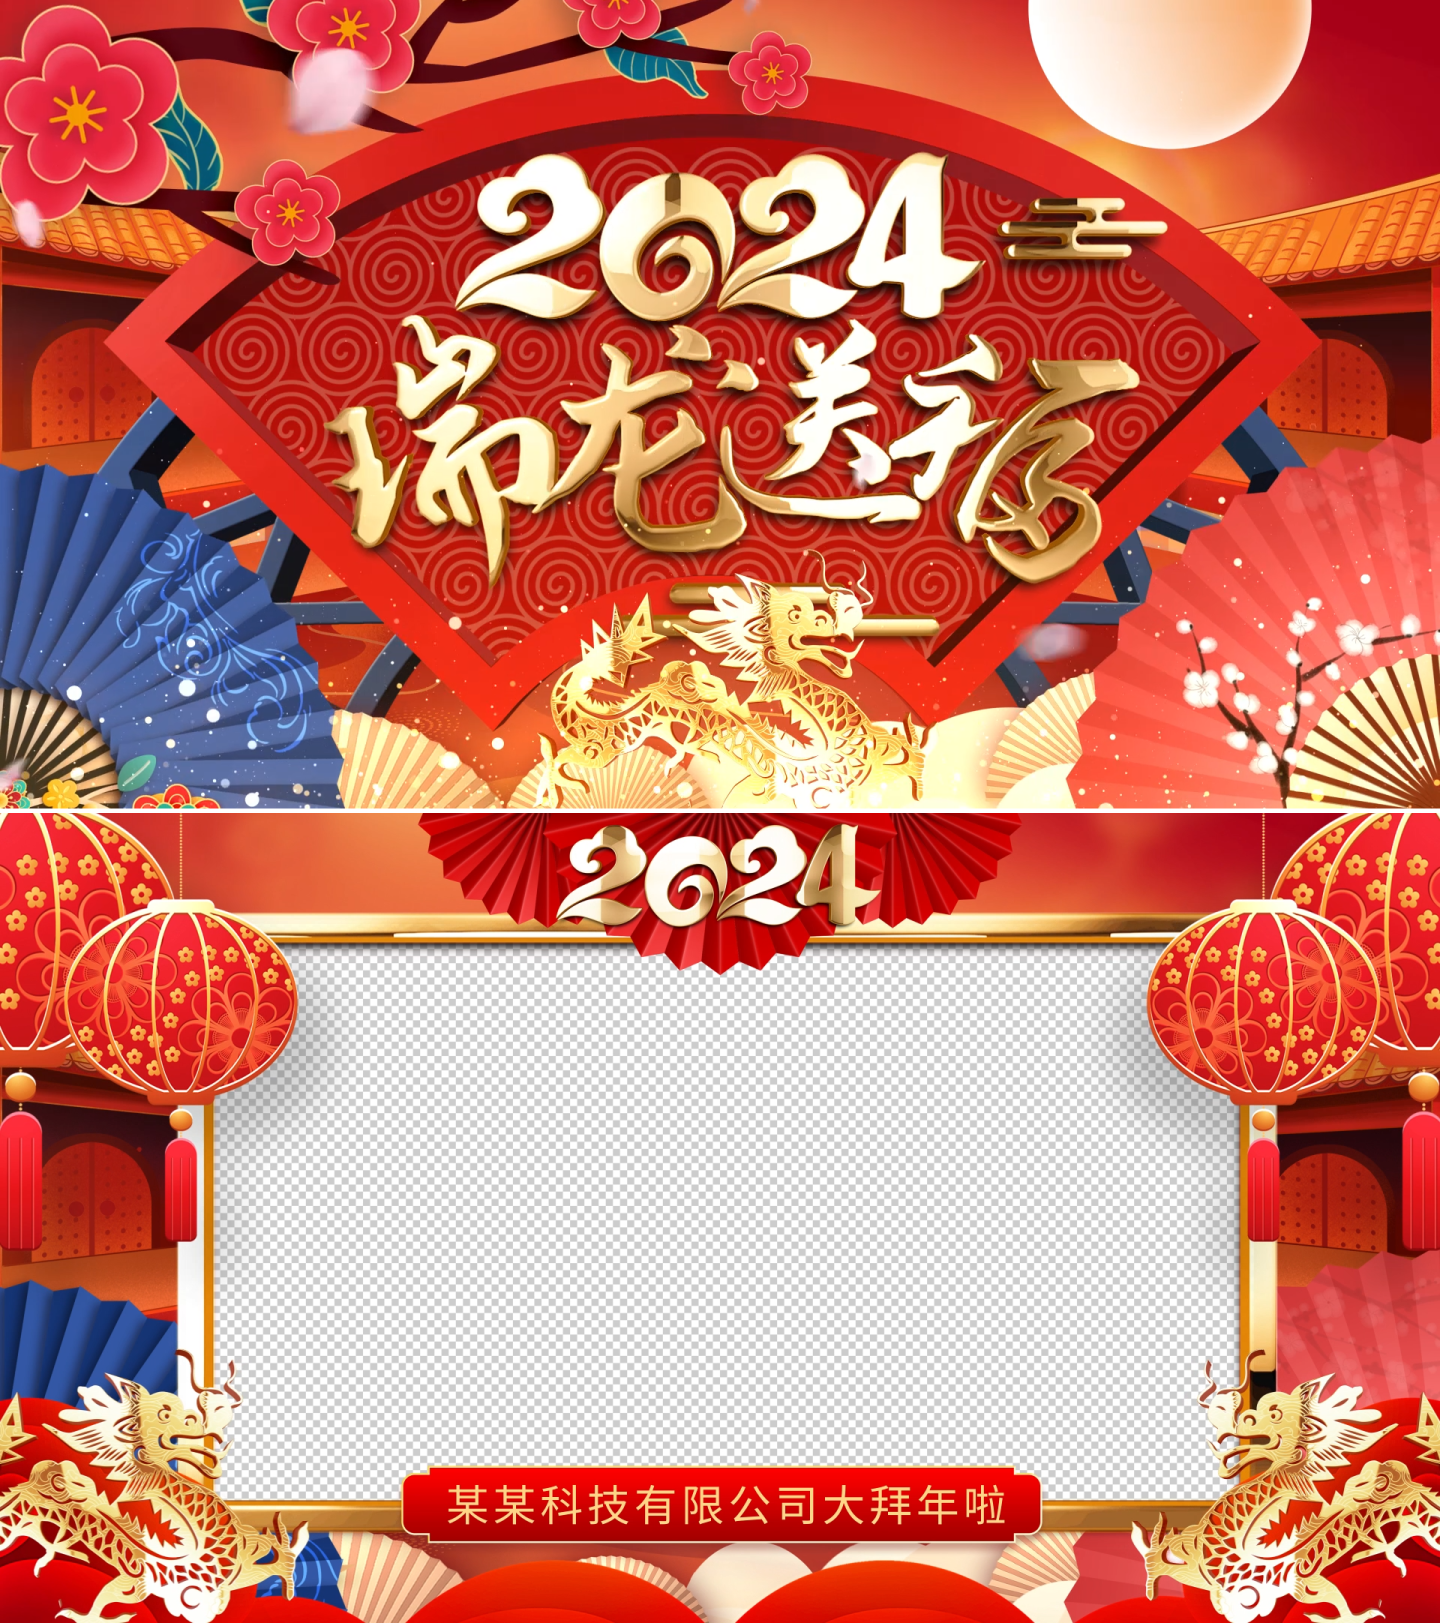 2024龙年新年春节拜年祝福视频框带通道